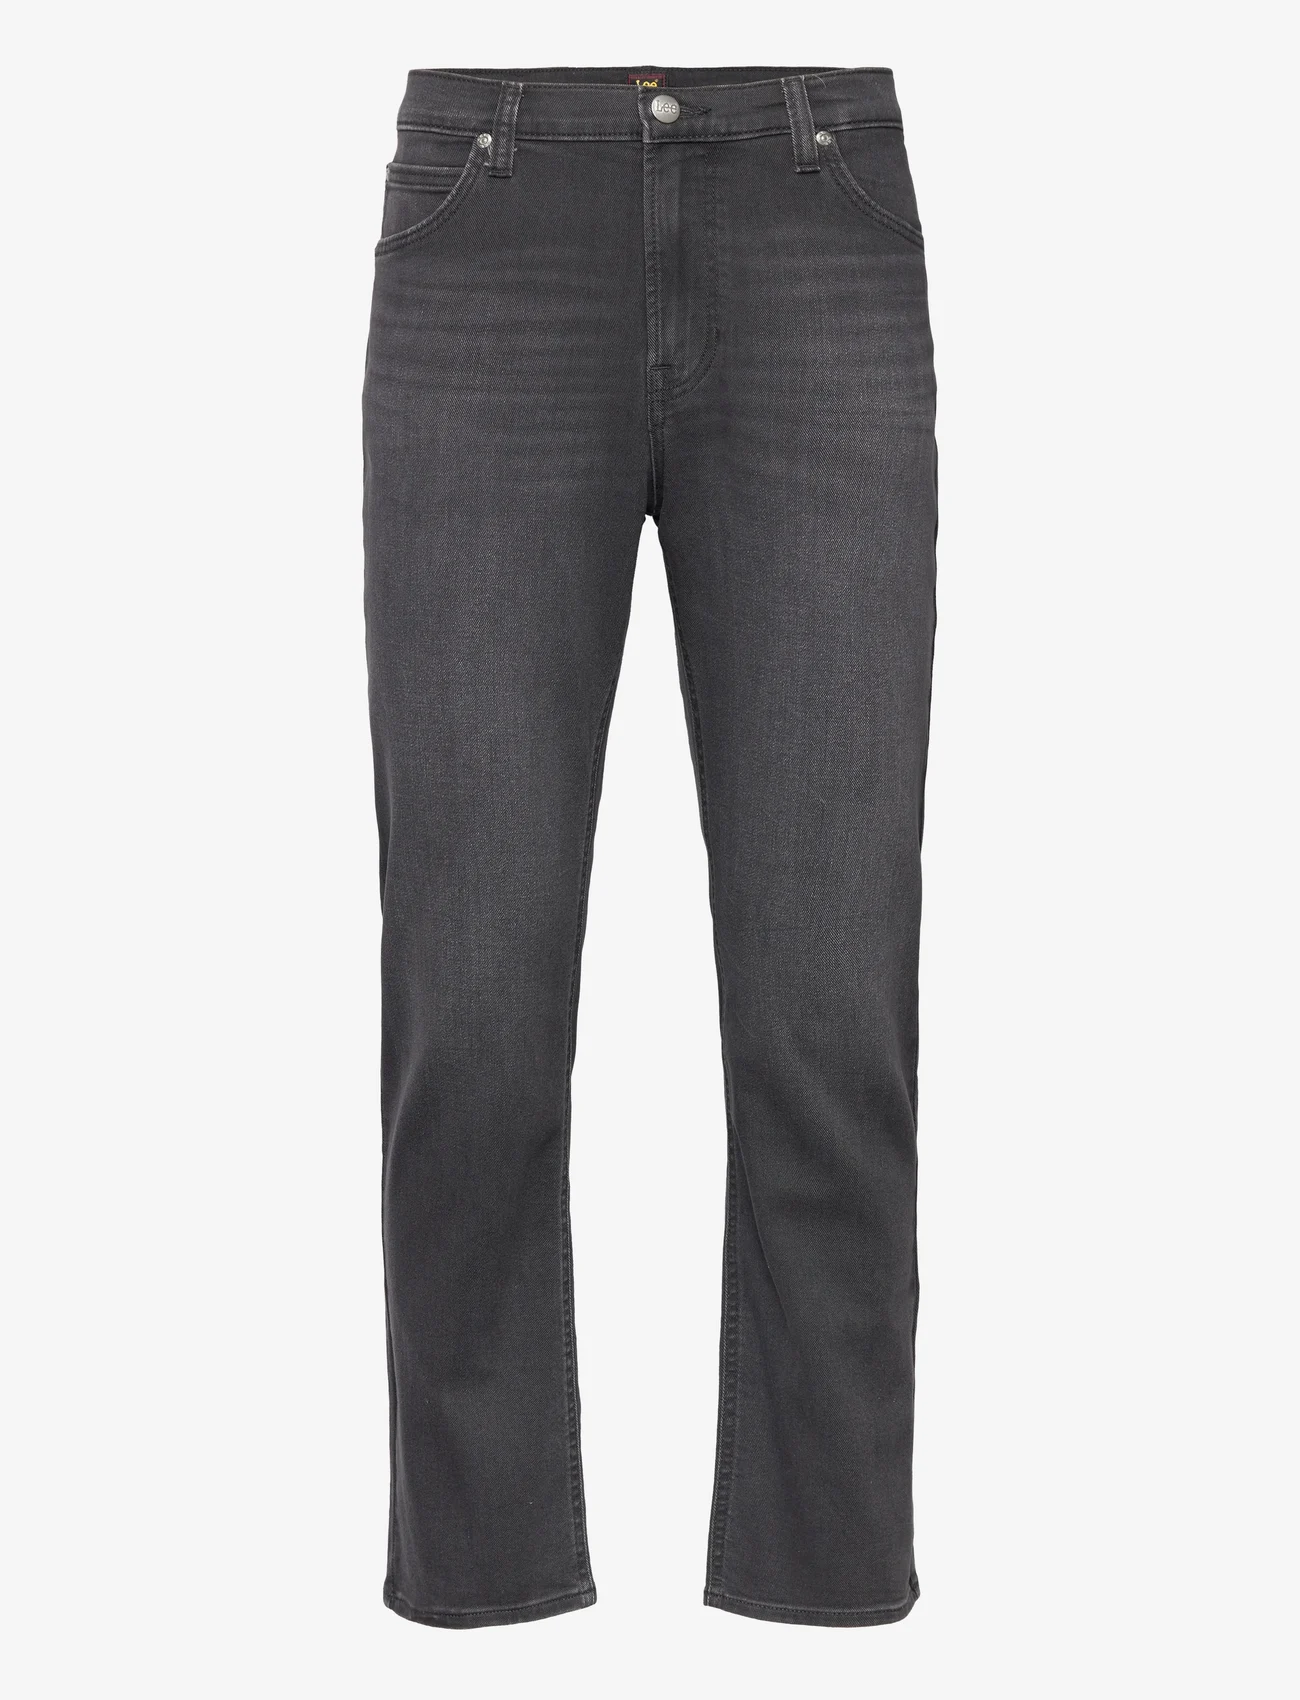 Lee Jeans - WEST - regular jeans - black used - 0